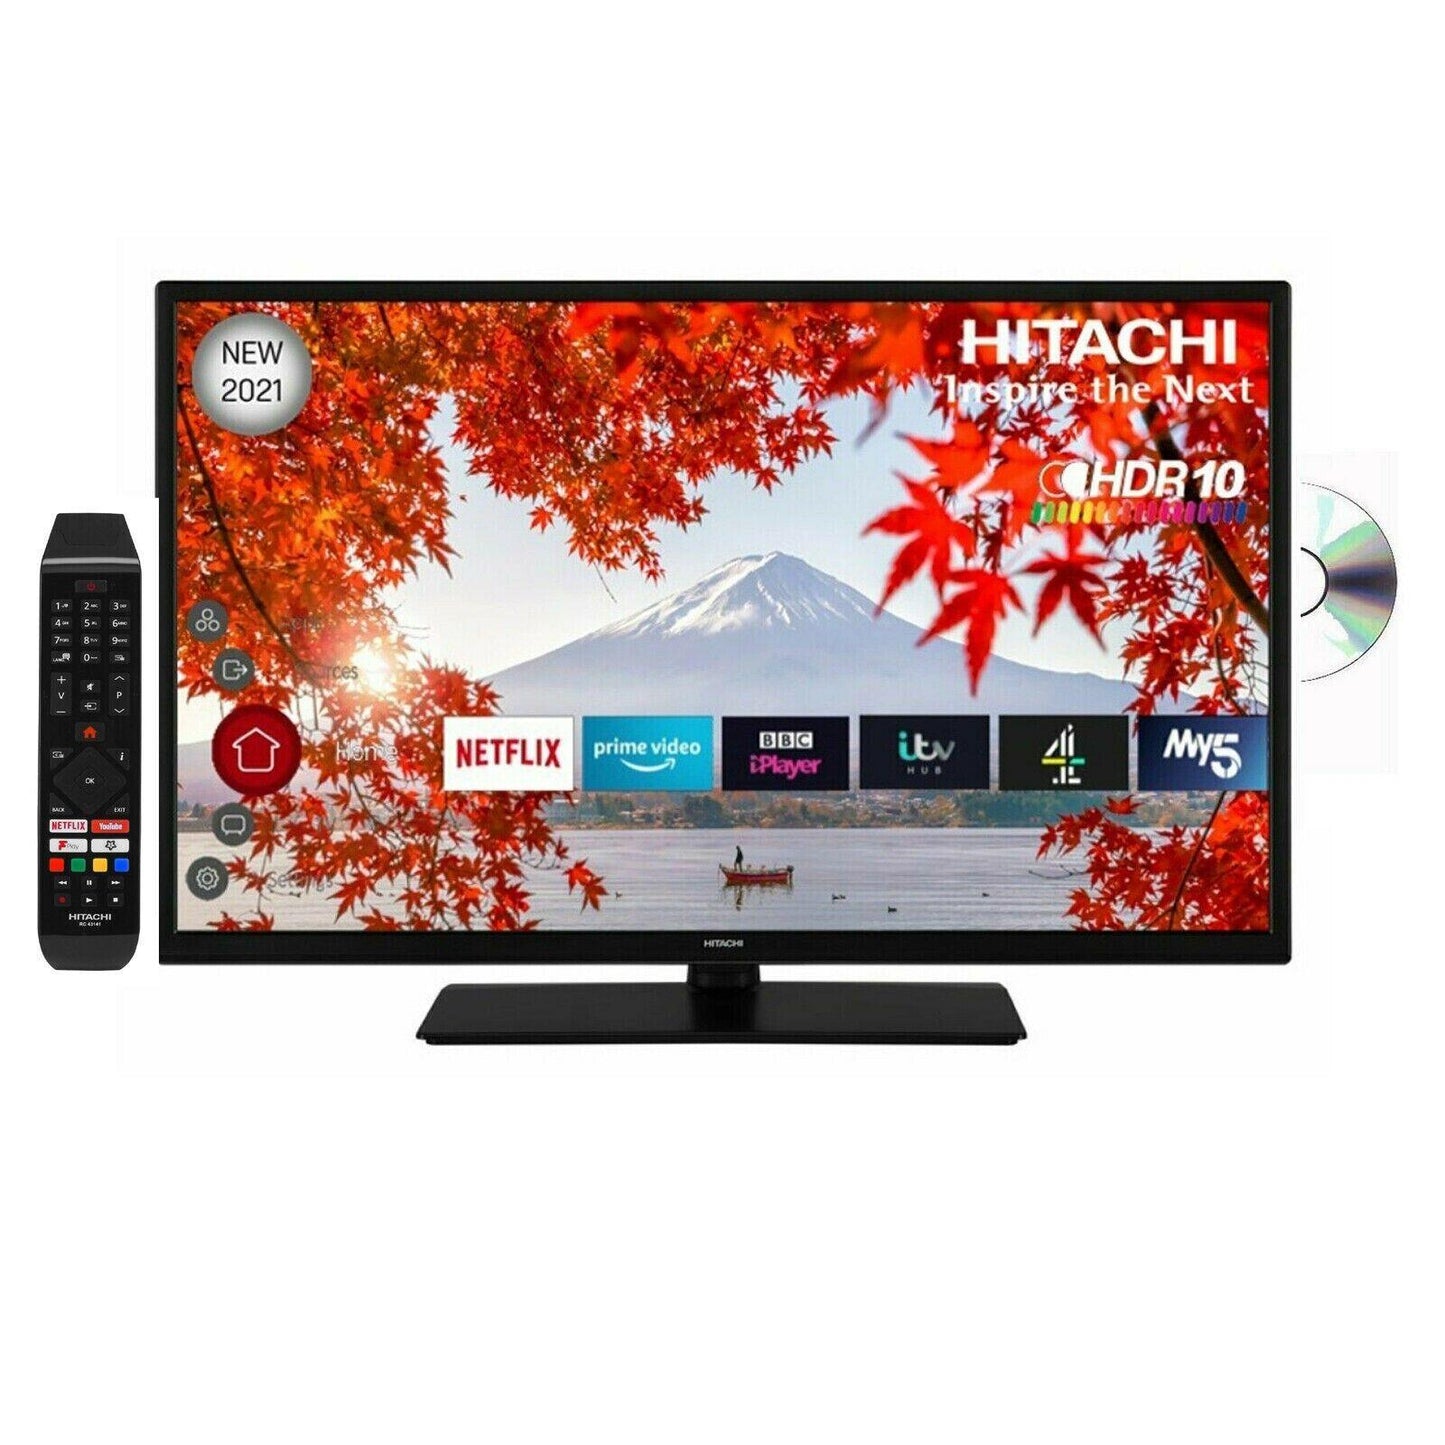 Hitachi 32 Inch 32HEV220U Smart HD Ready TV / DVD Combi U - Smart Clear Vision